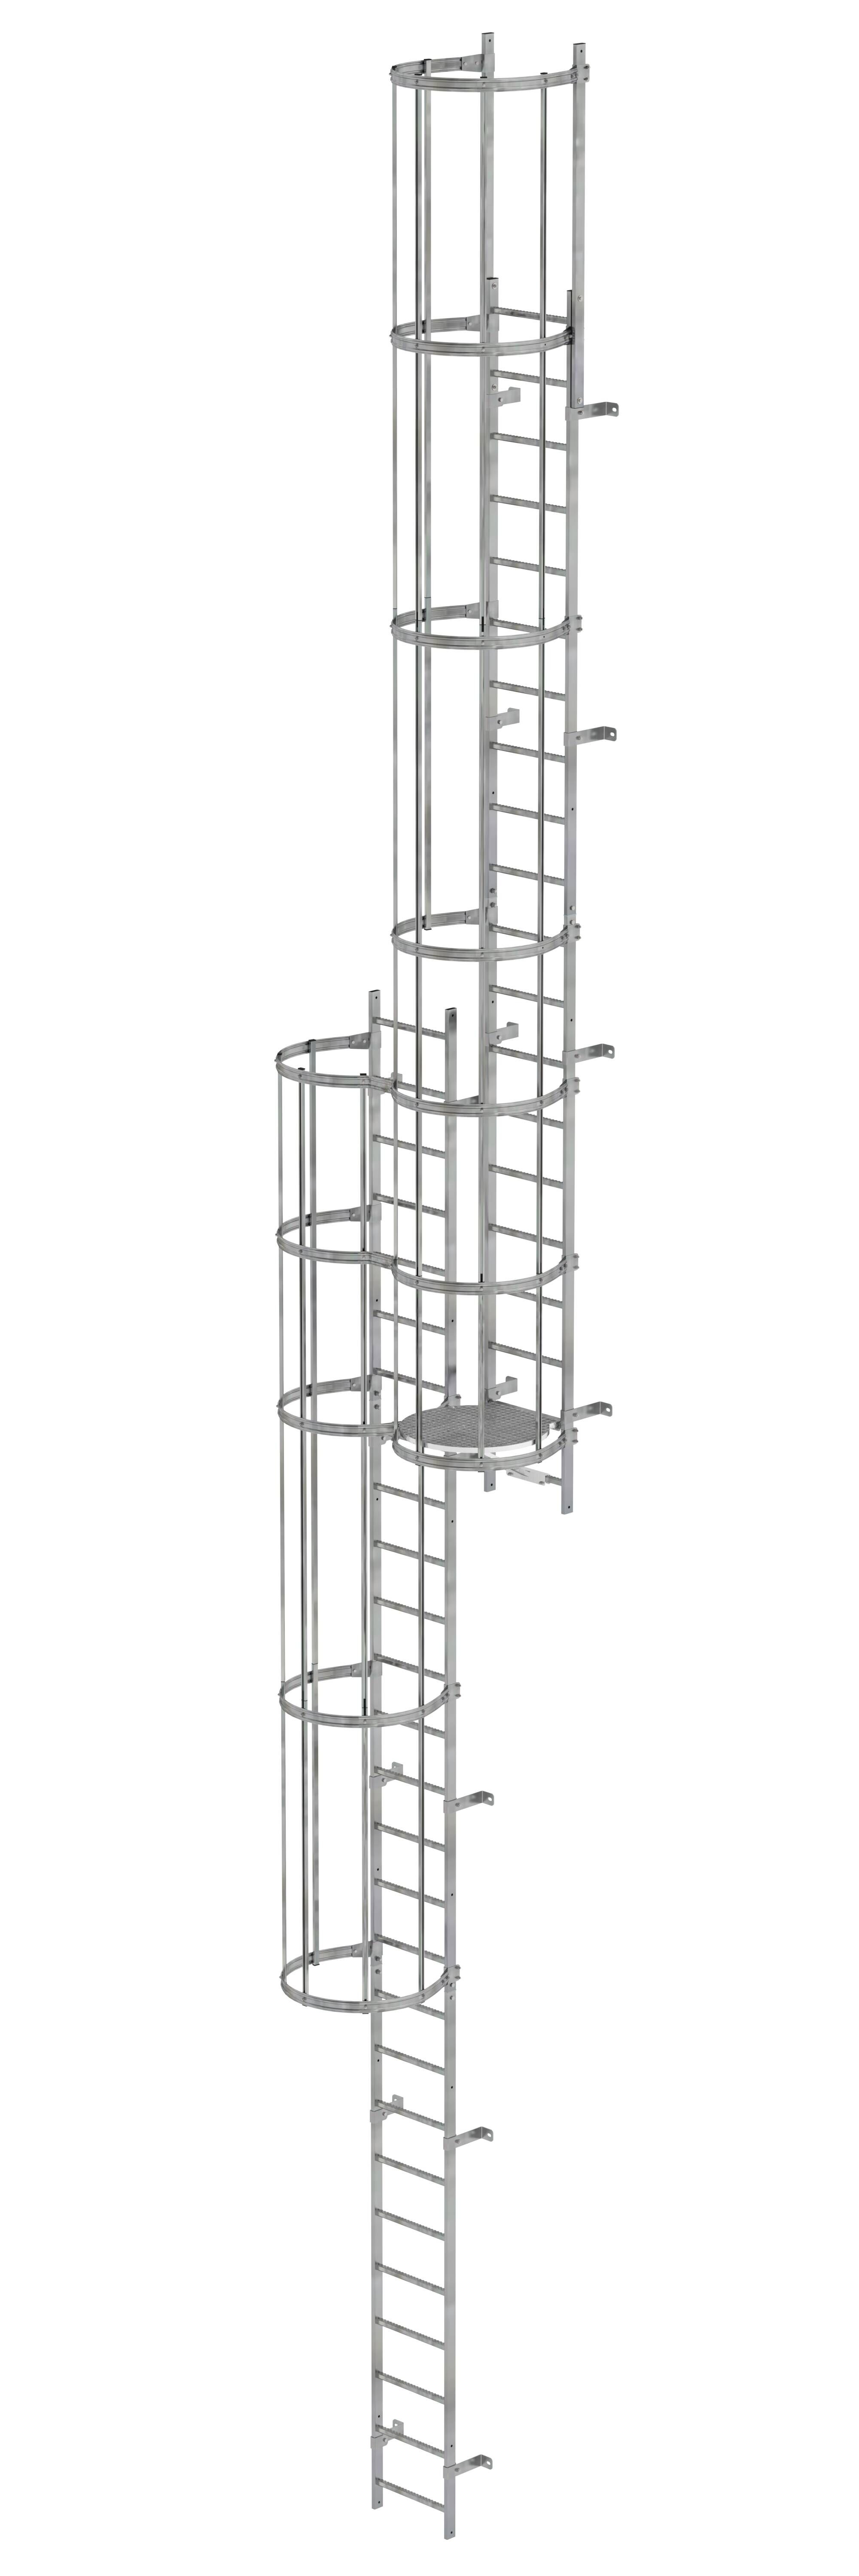 Mehrzügige Steigleiter mit Rückenschutz (Notleiter) Stahl verzinkt 12,12m